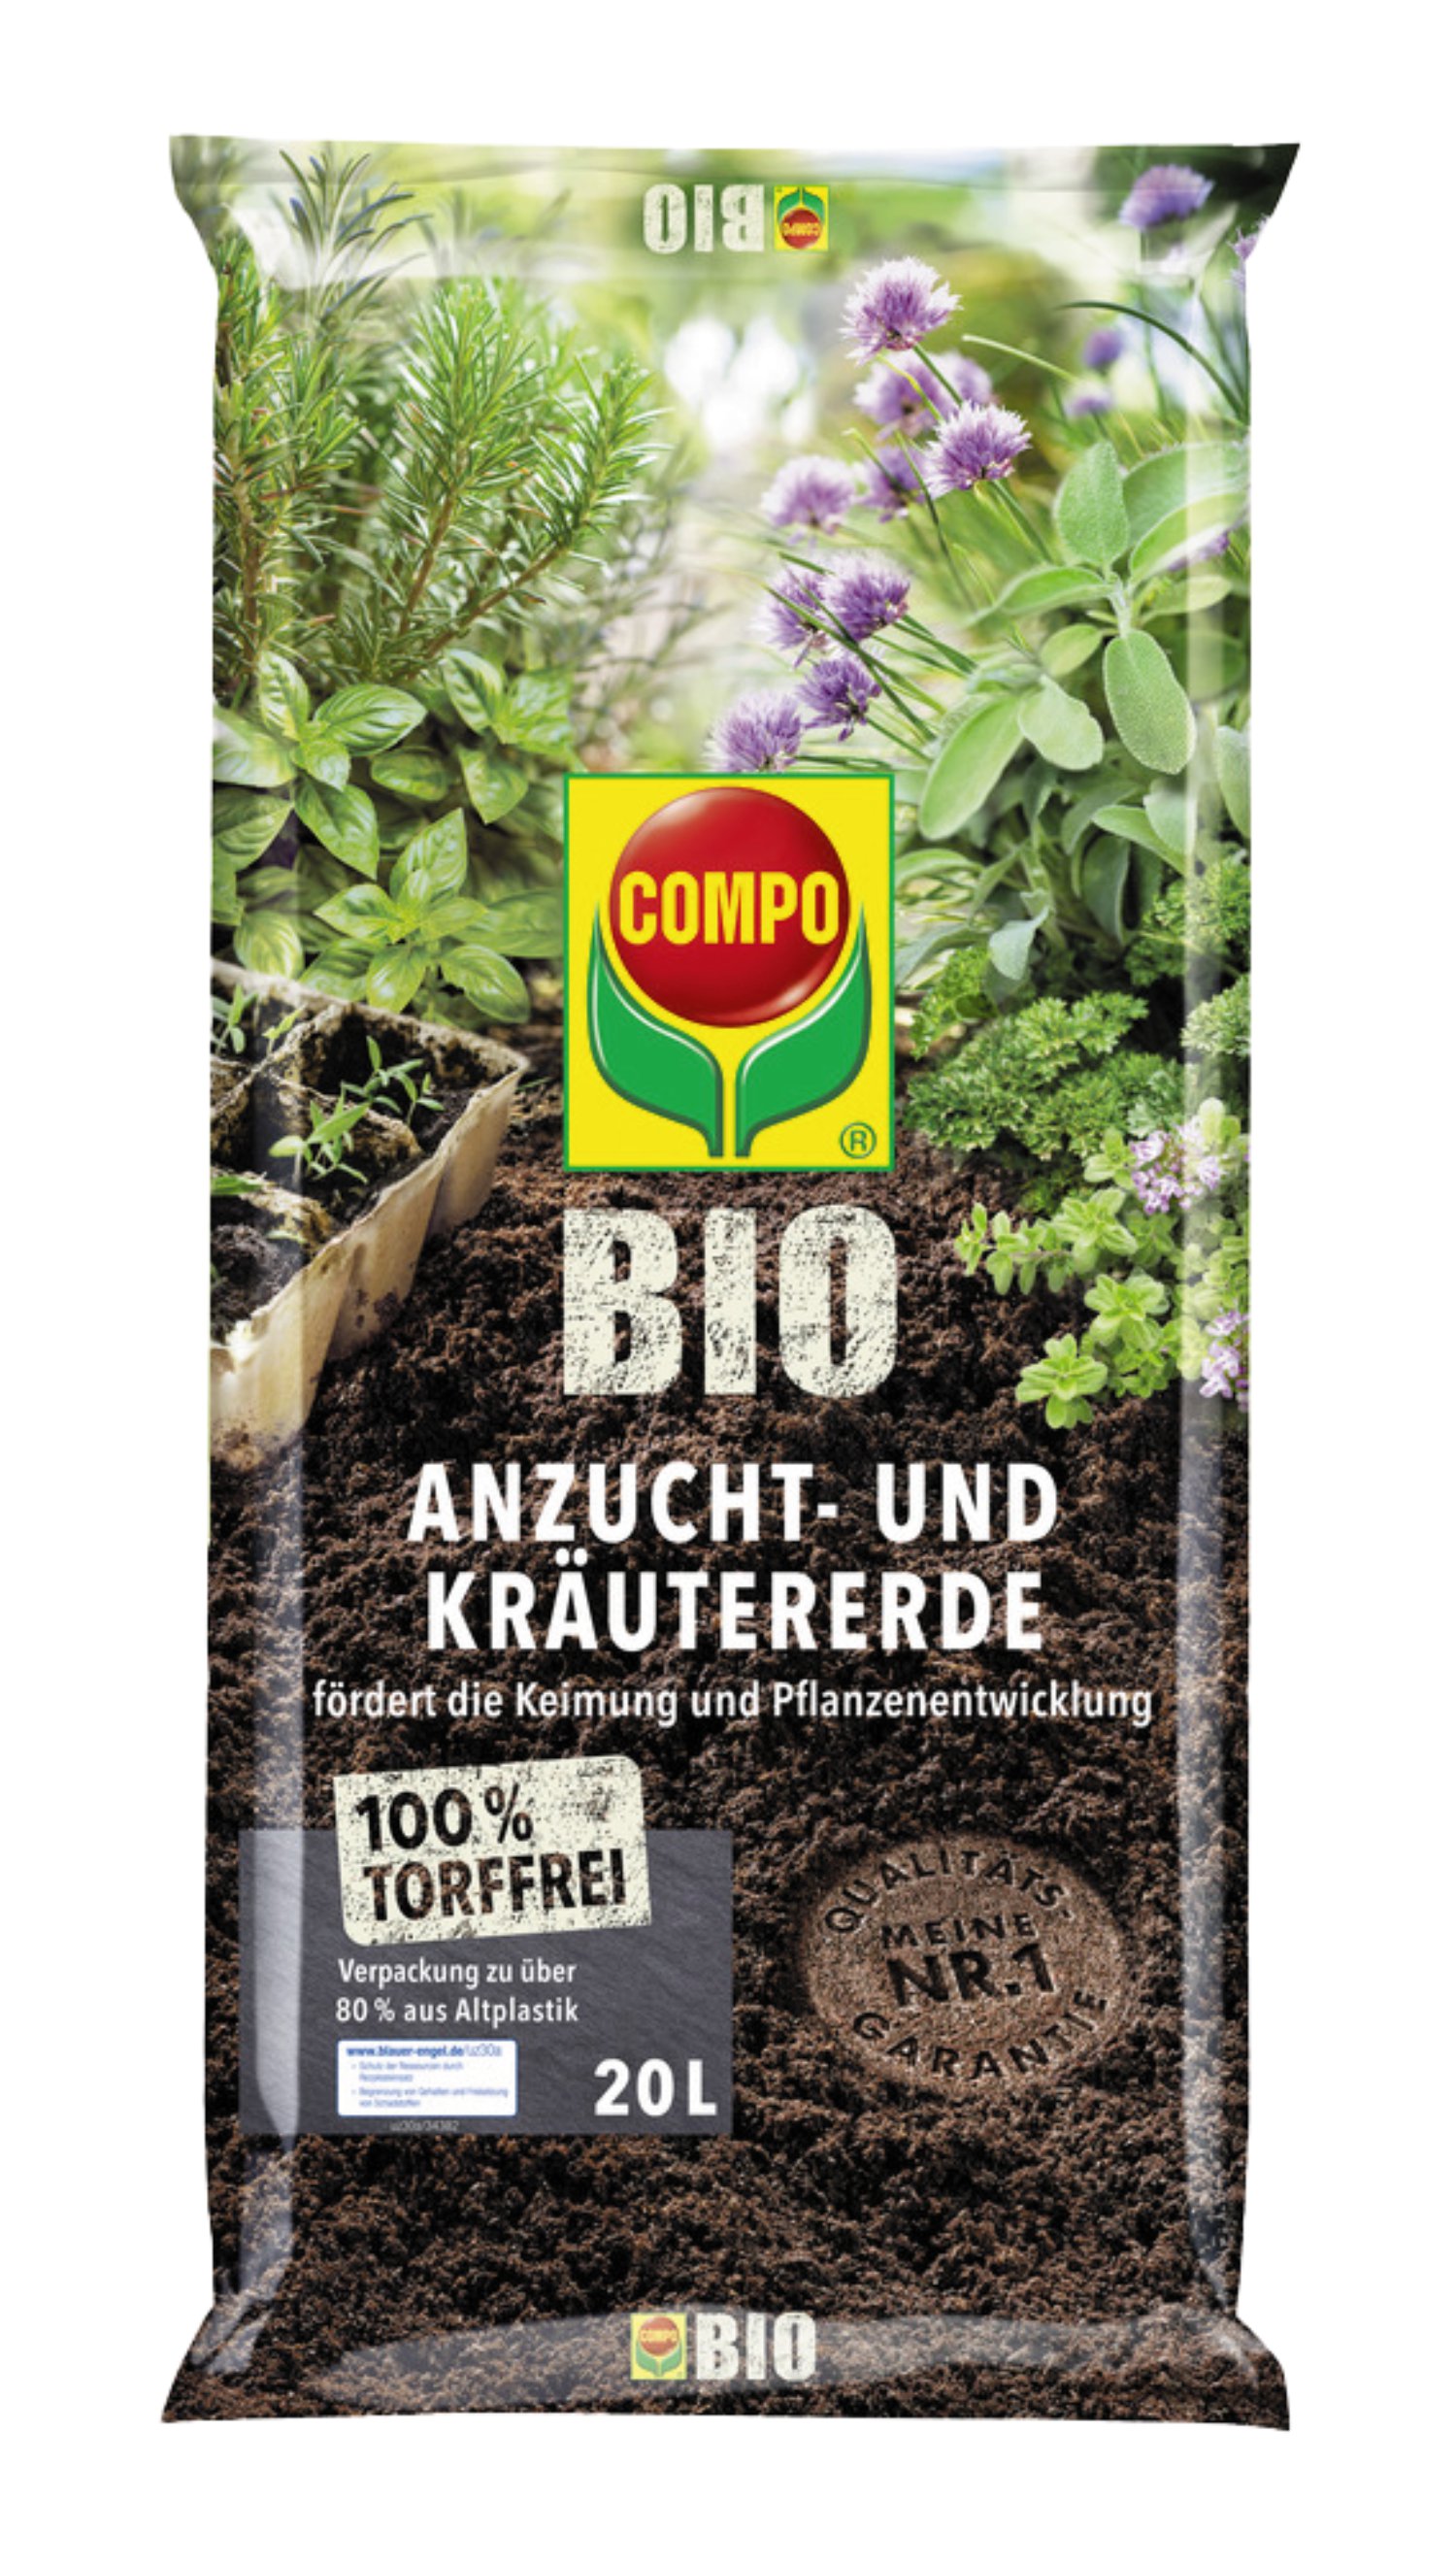 COMPO® Bio Anzucht- und Kräutererde torffrei 20 kg